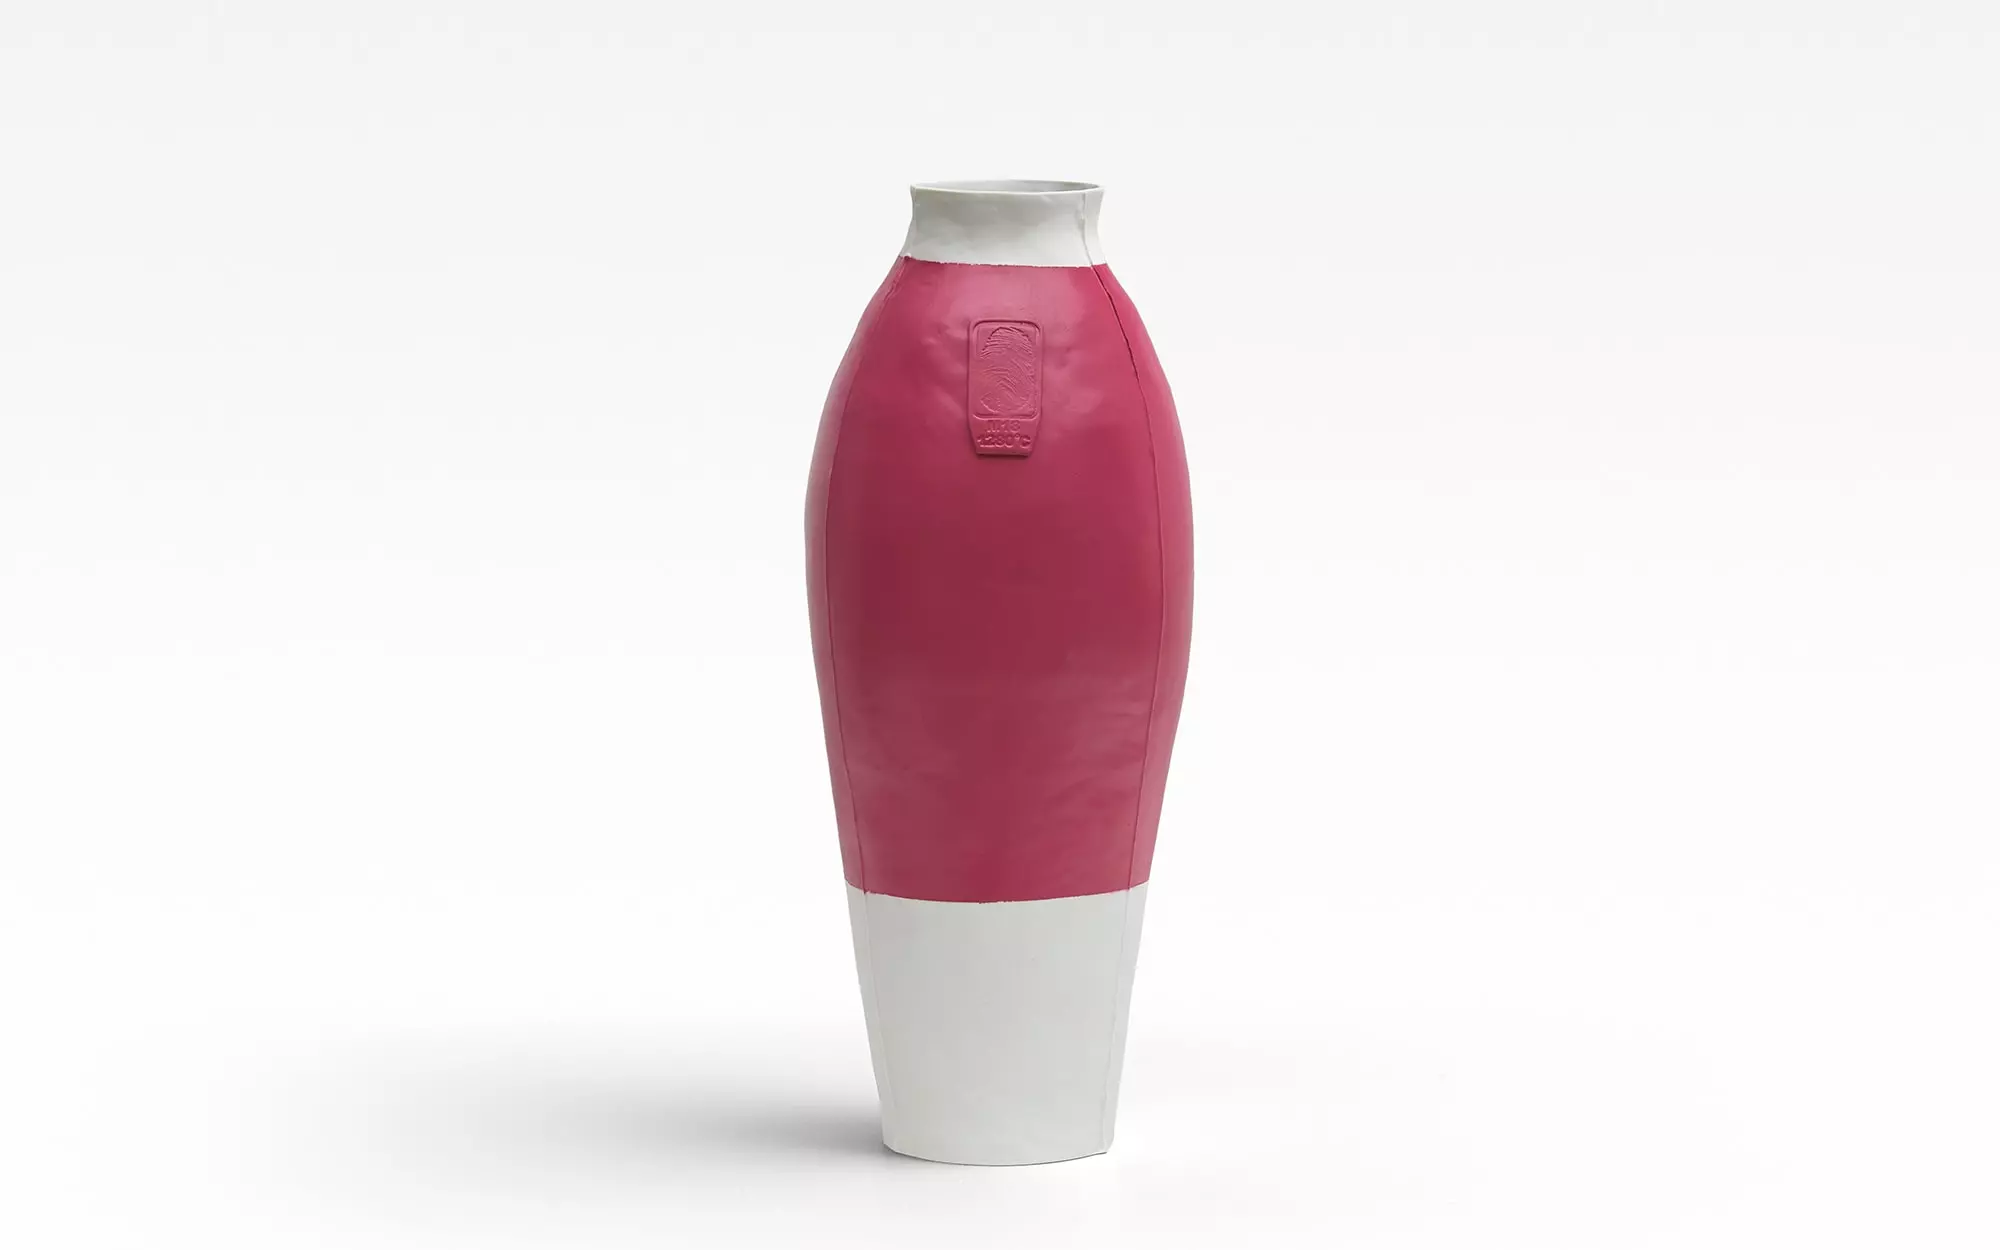 Colored Vases RAL 4010 (MAGENTA) - Hella Jongerius - Chair - Galerie kreo